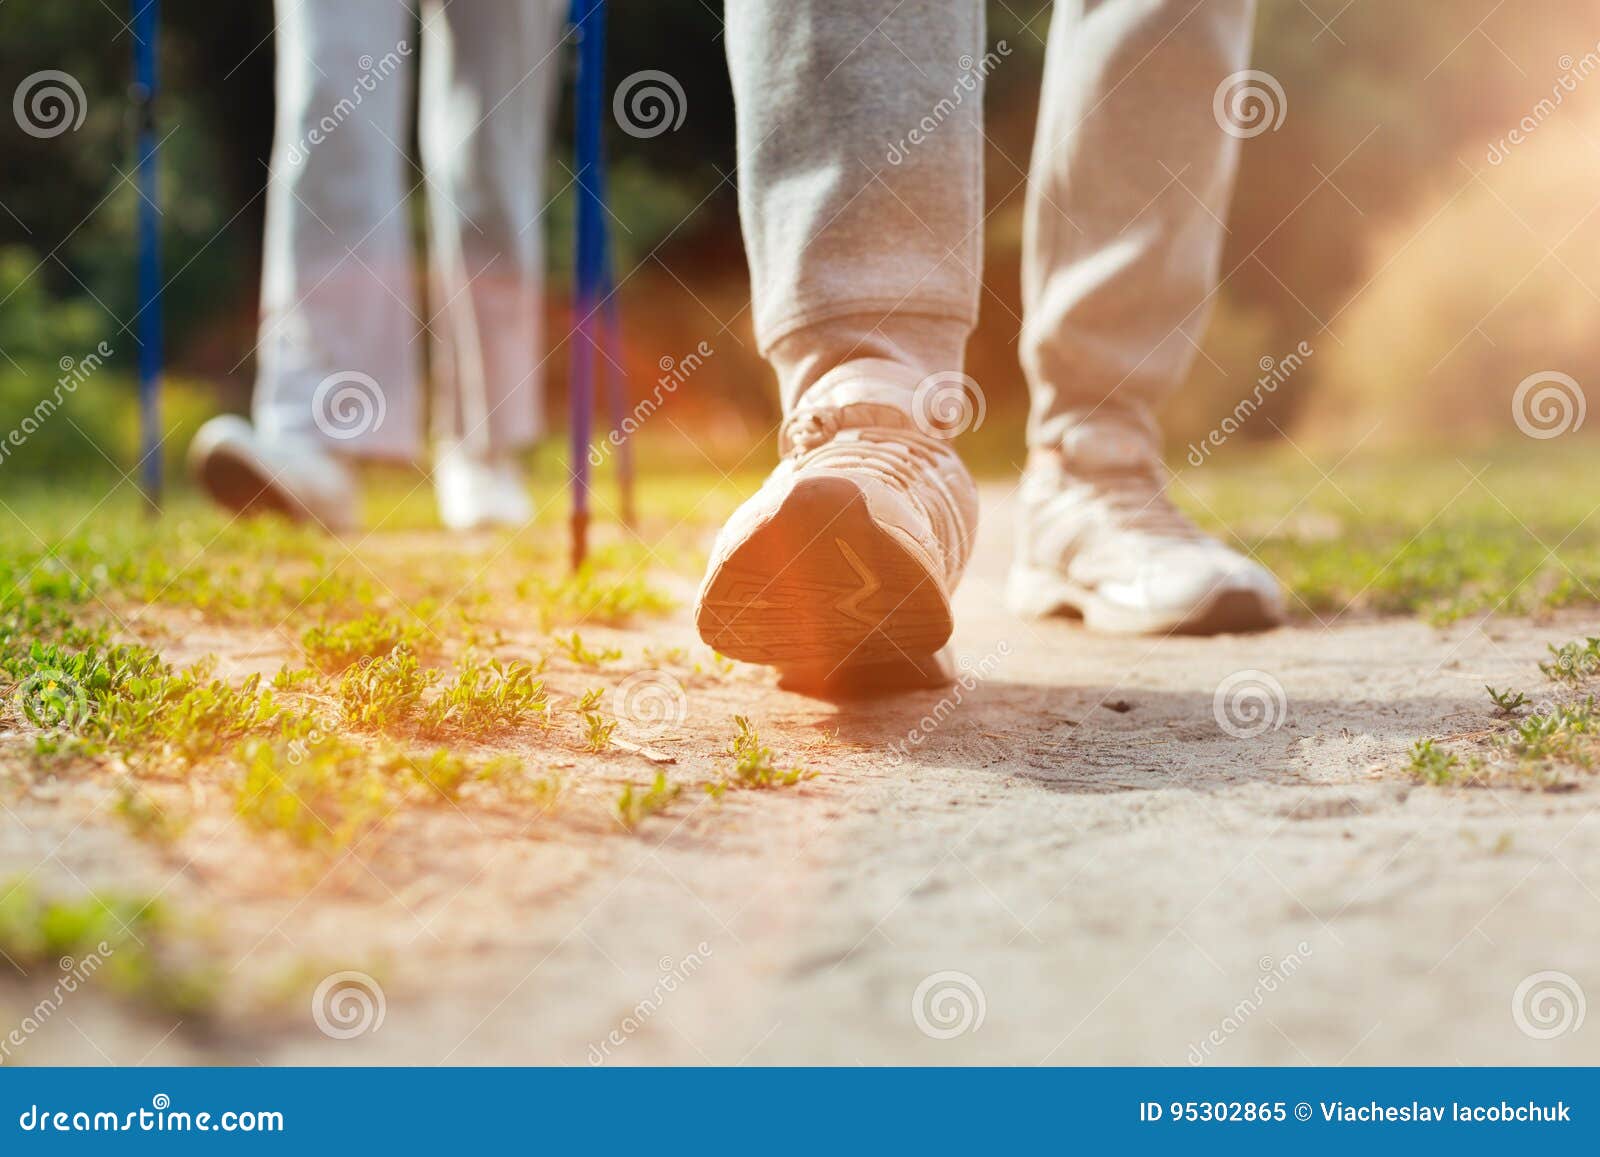 Помогаем друг другу сделать шаг. Человек делает шаг. Картинка человек делает шаг. Нога делает шаг. Фото делать шаги.